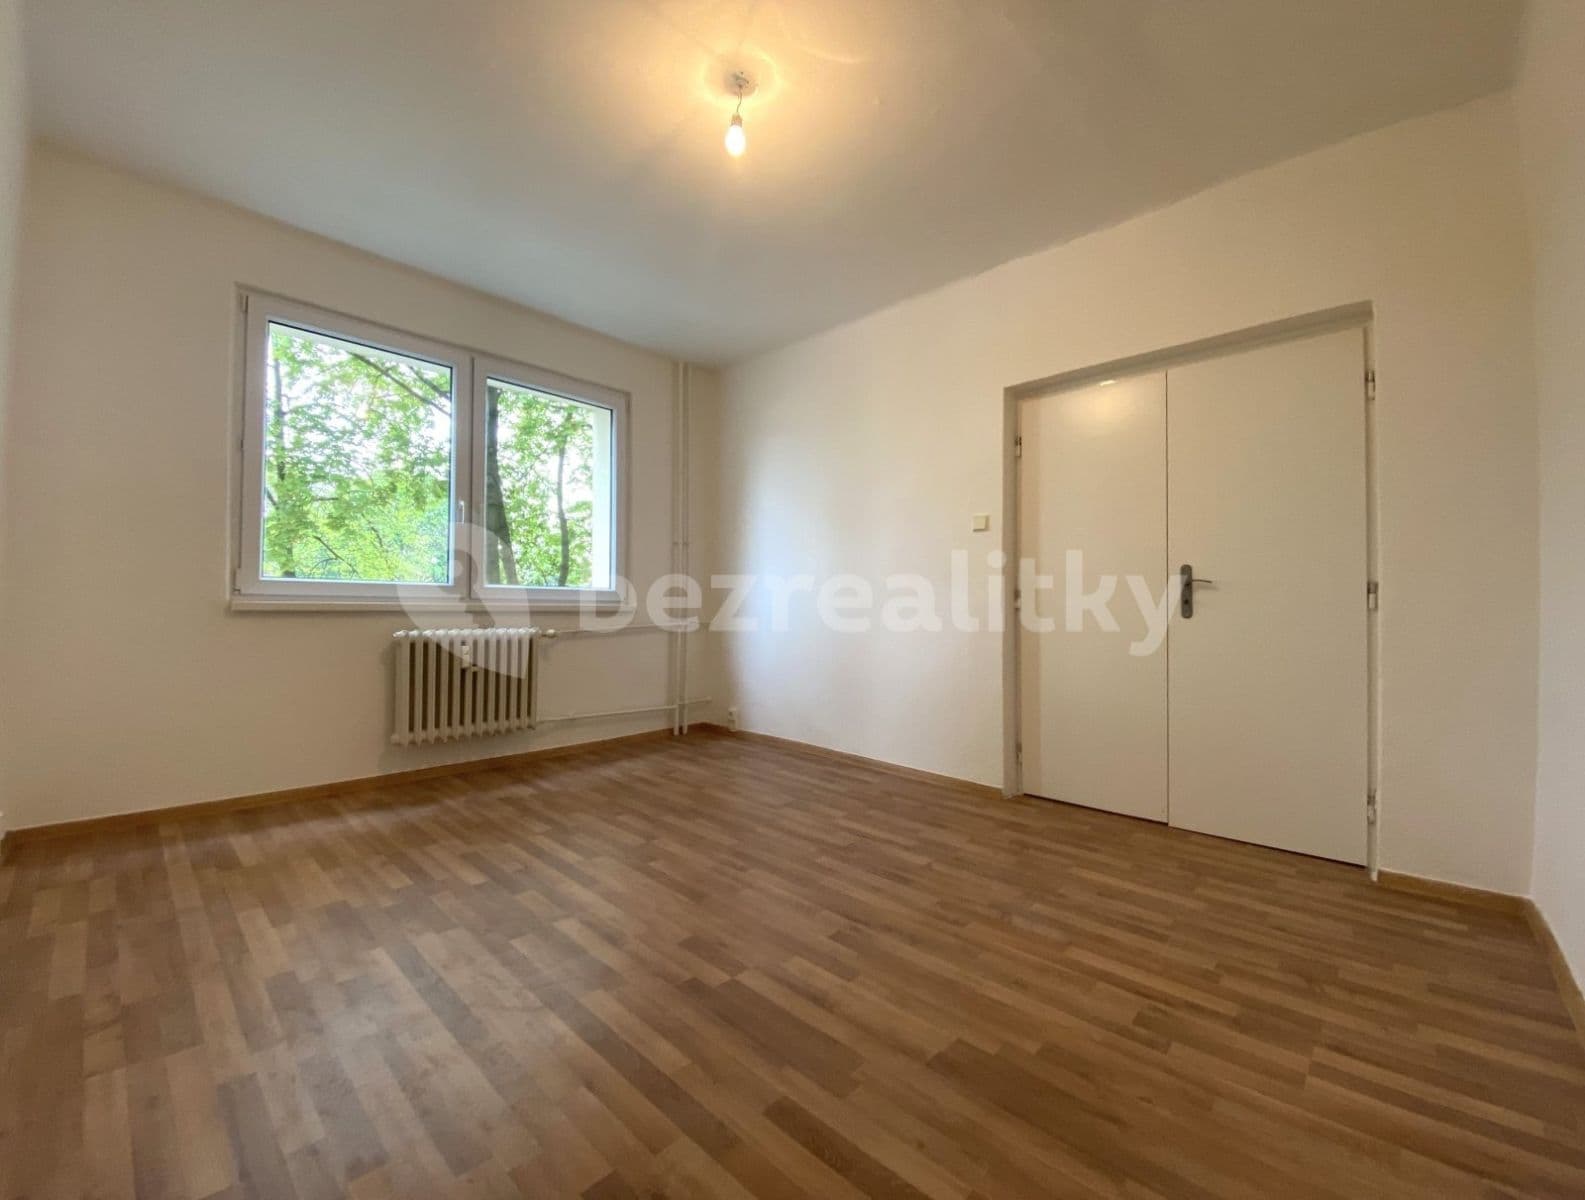 2 bedroom flat to rent, 53 m², Cihelní, Karviná, Moravskoslezský Region